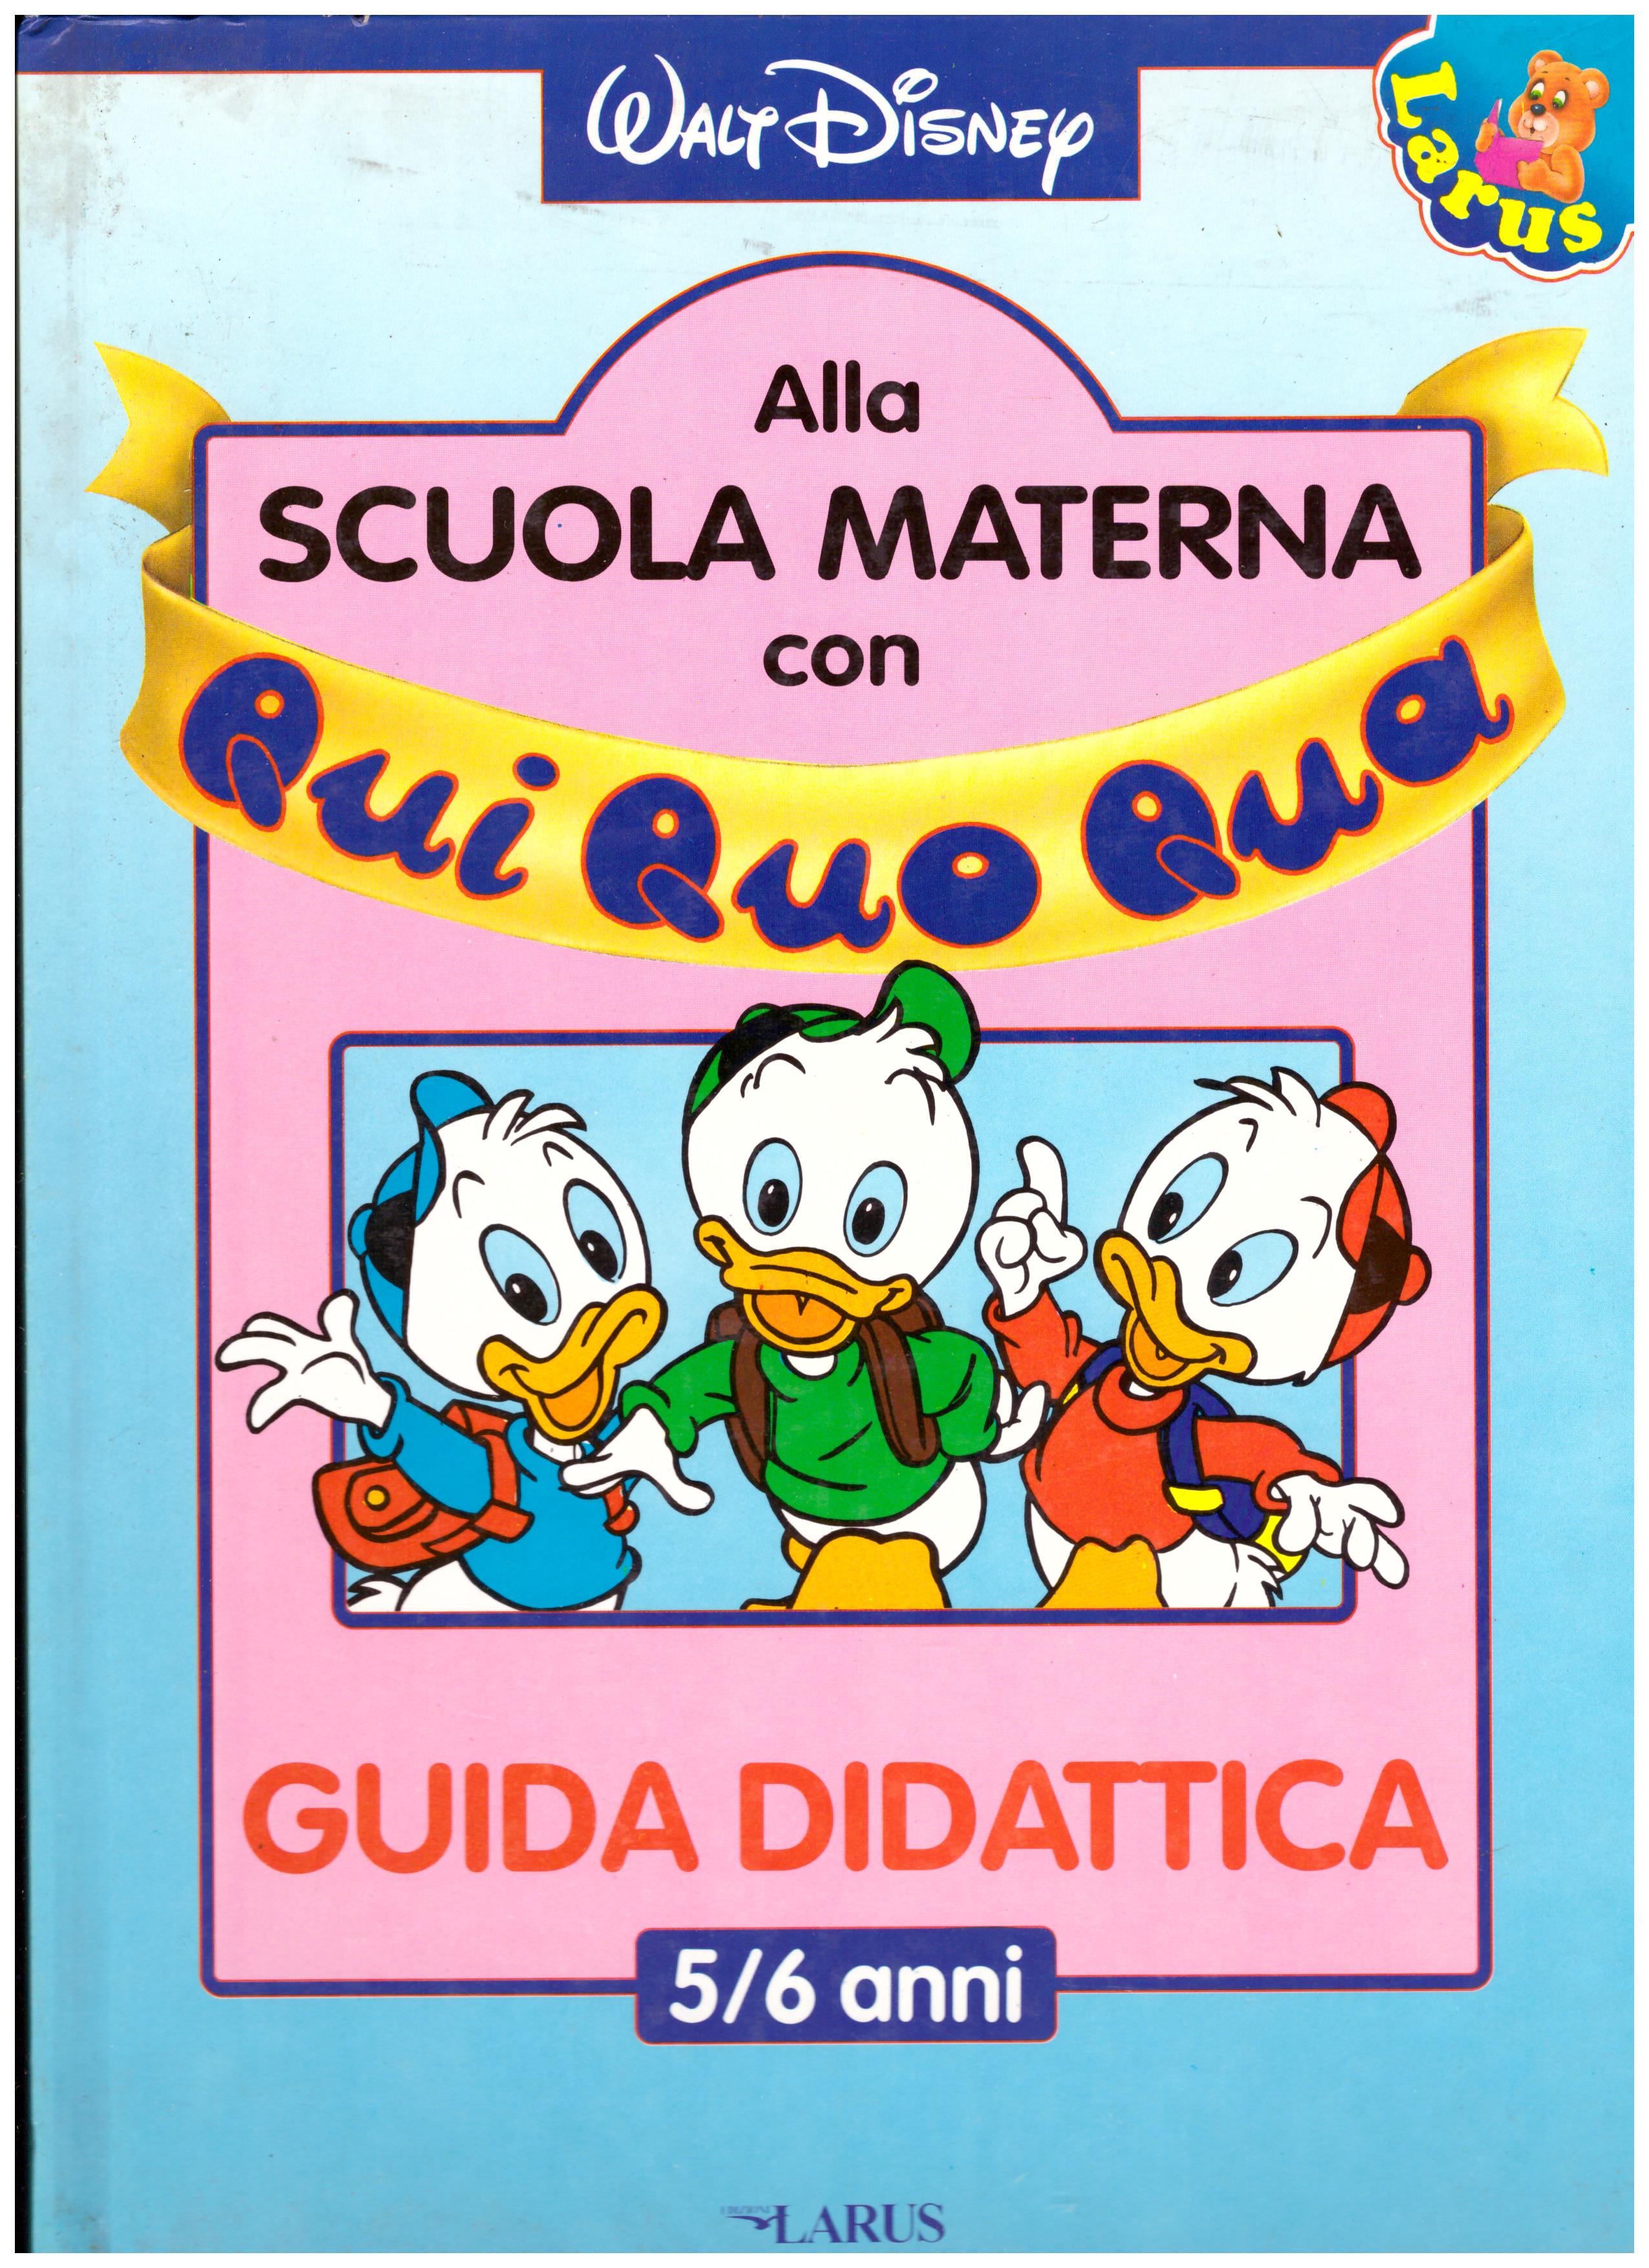 Titolo: Alla scuola materna con Qui Quo Qua,guida didattica 5/6 anni    Autore: AA.VV.     Editore: Larus